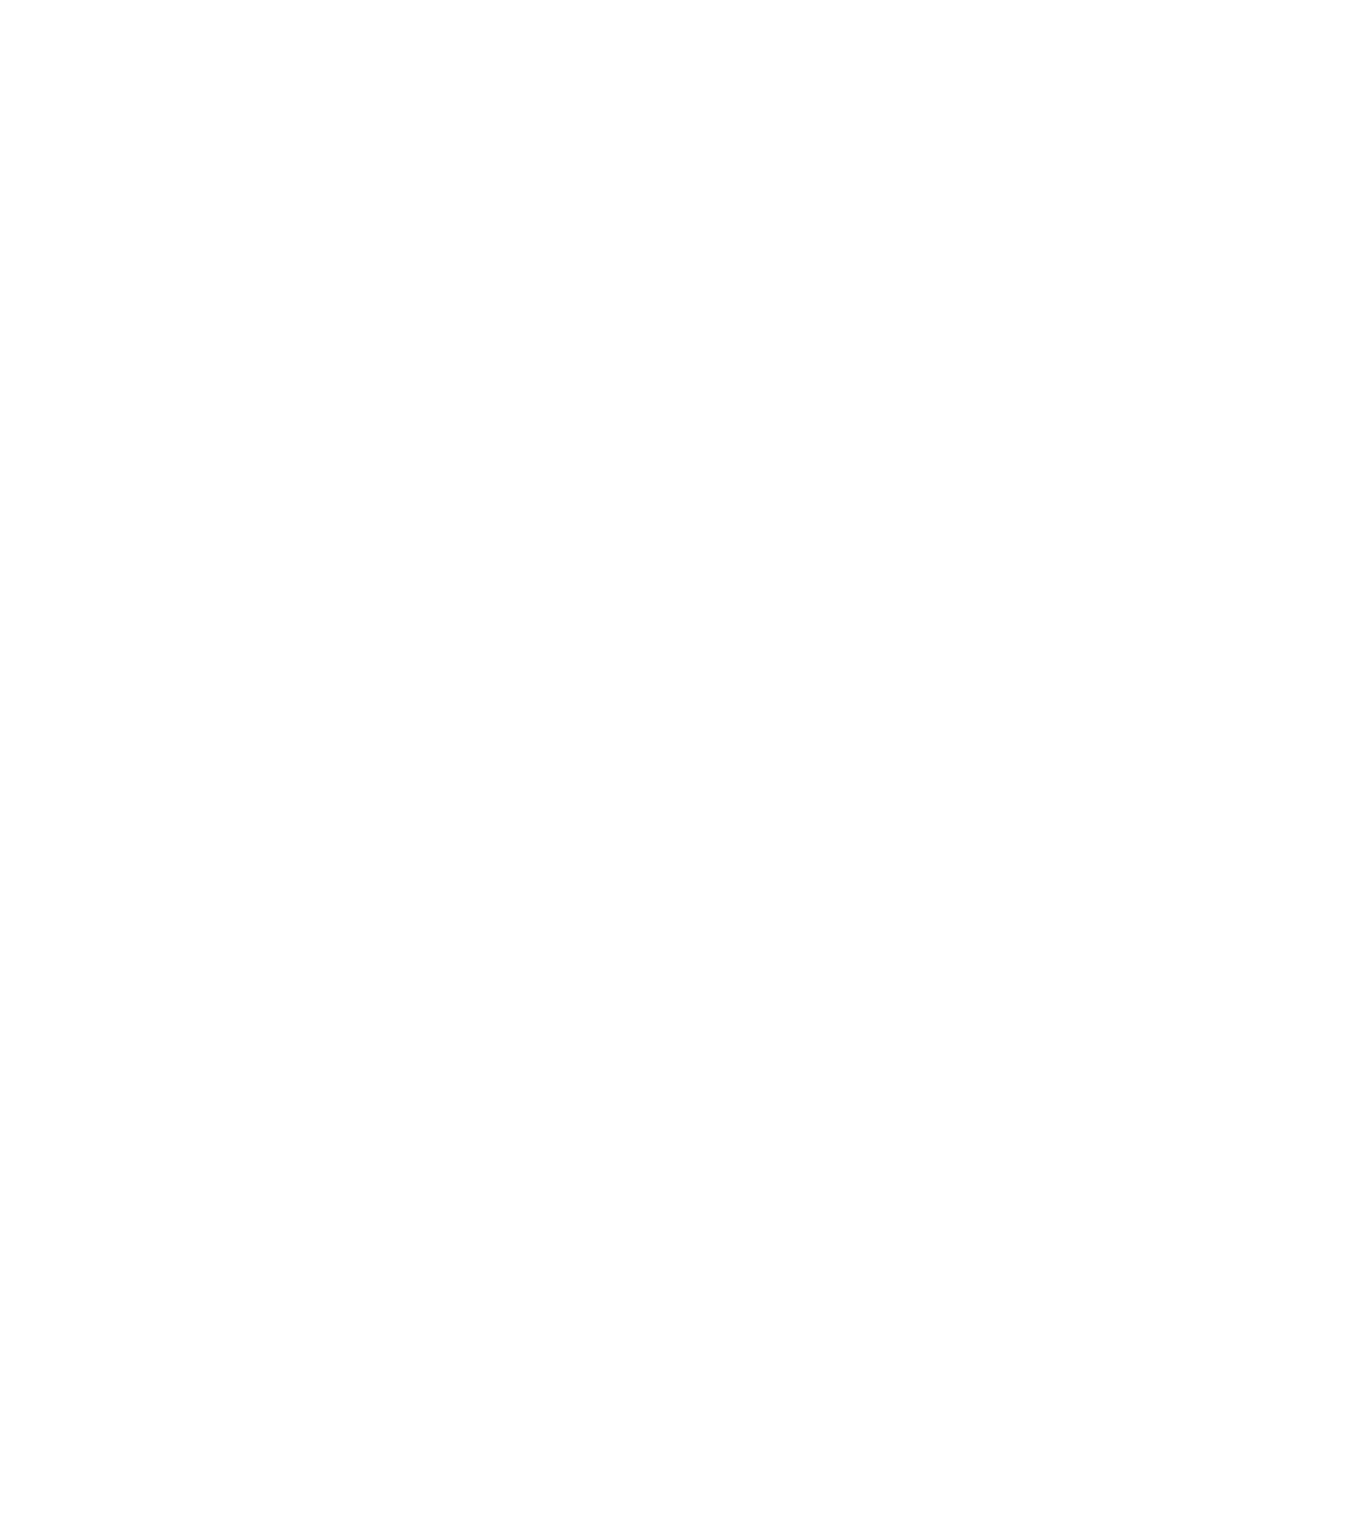 Cresco Labs logo pour fonds sombres (PNG transparent)